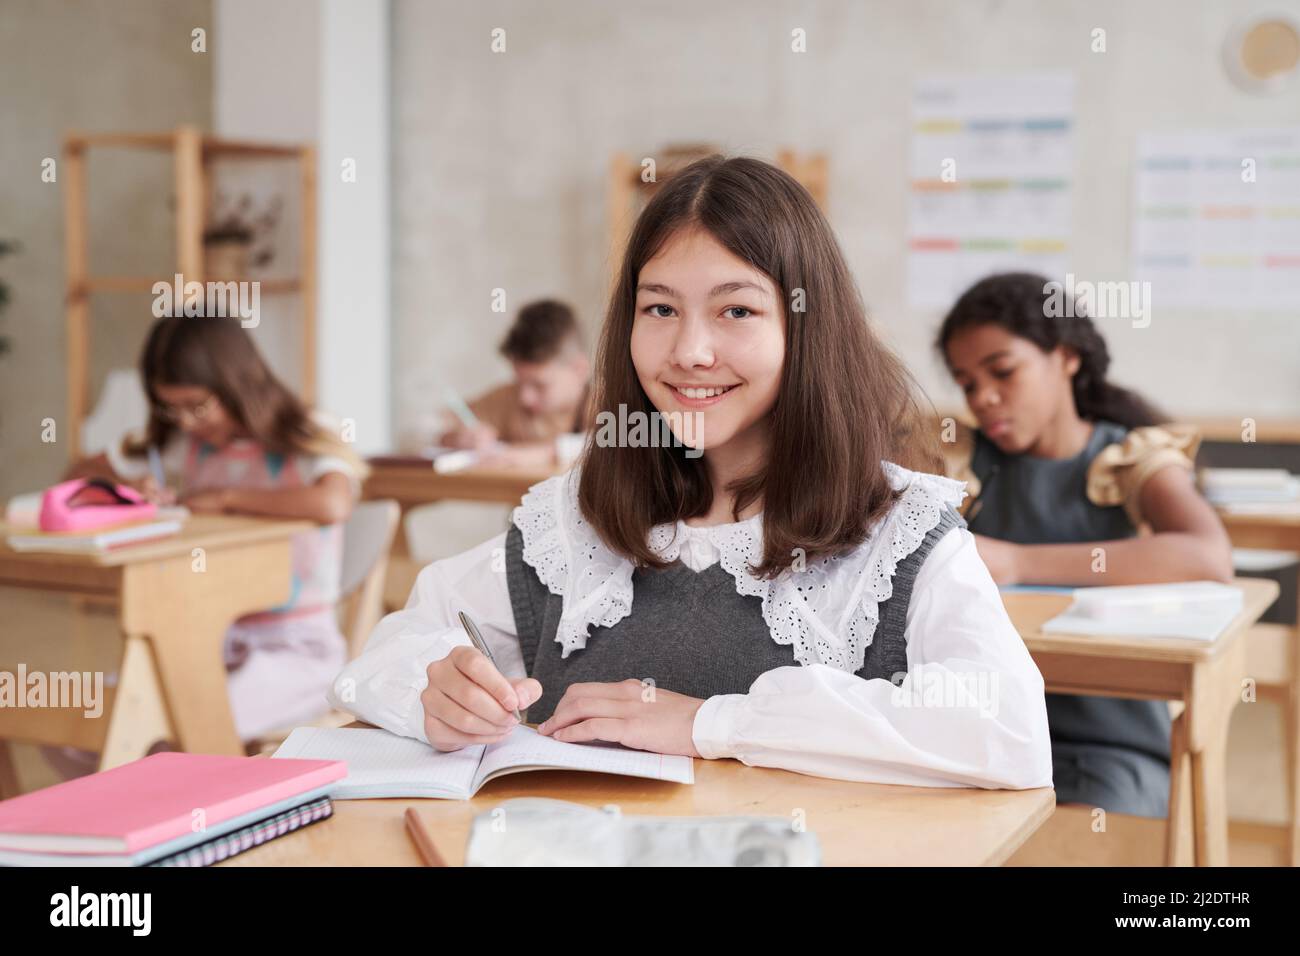 Portrait d'une écolière souriante portant un uniforme, assise au bureau dans une salle de classe, décor en bois, espace de photocopie Banque D'Images